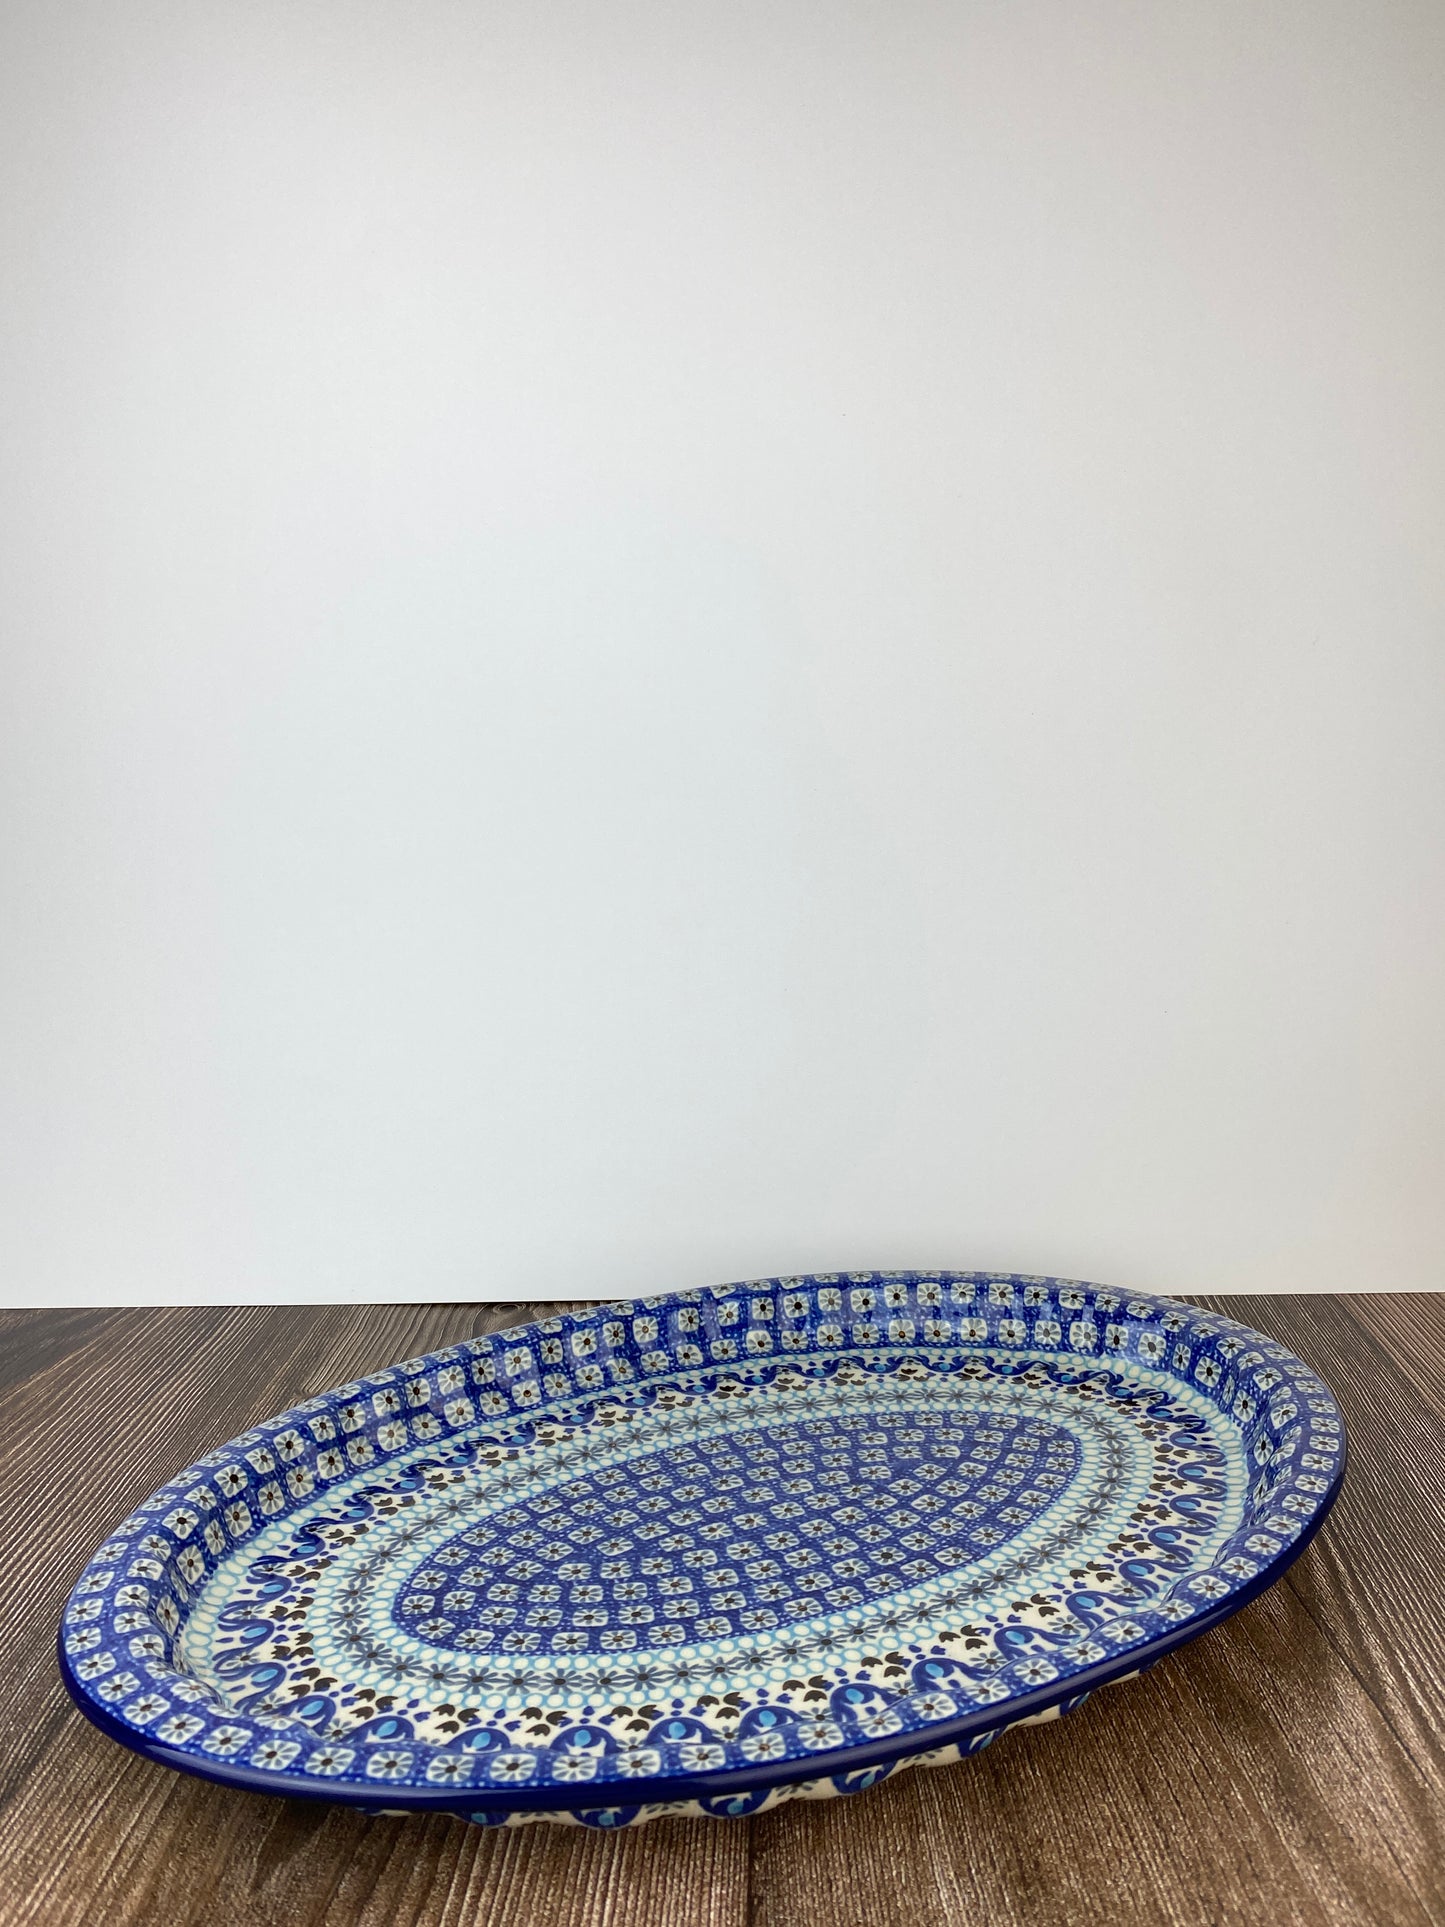 Oval Platter - Shape 614 - Pattern 1026